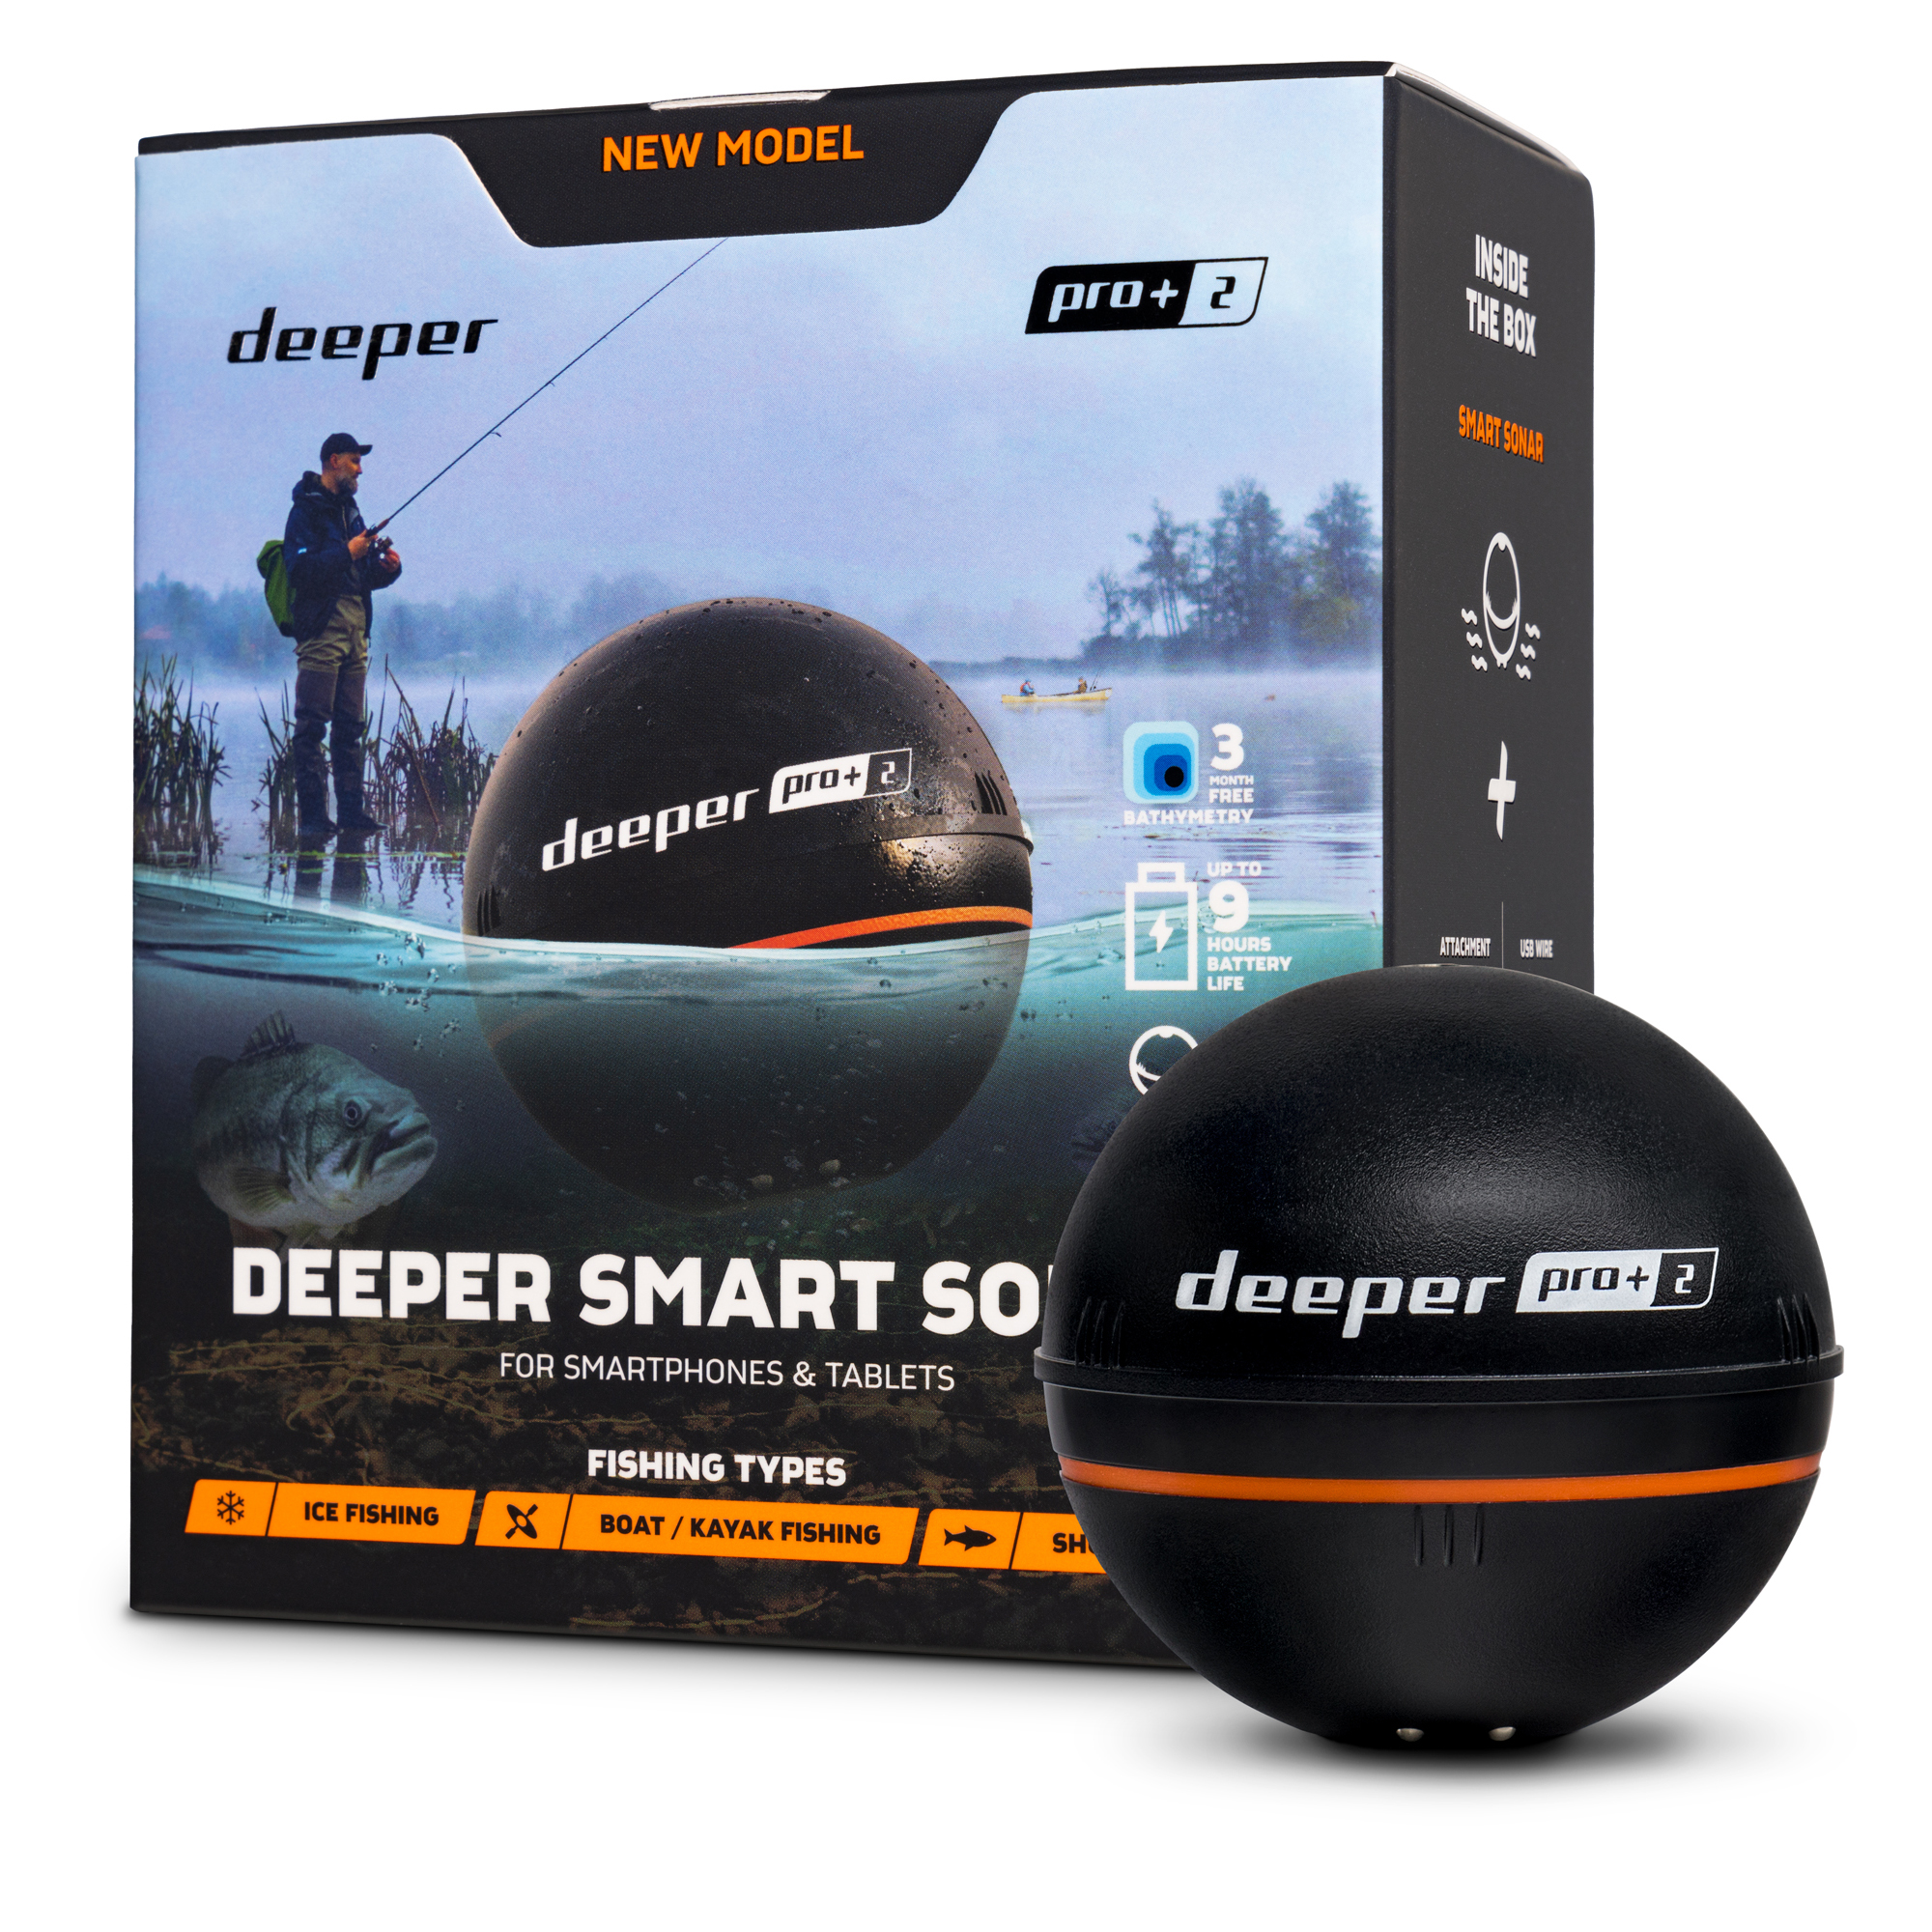 Deeper – Second Chance Ltd, European sports distributors